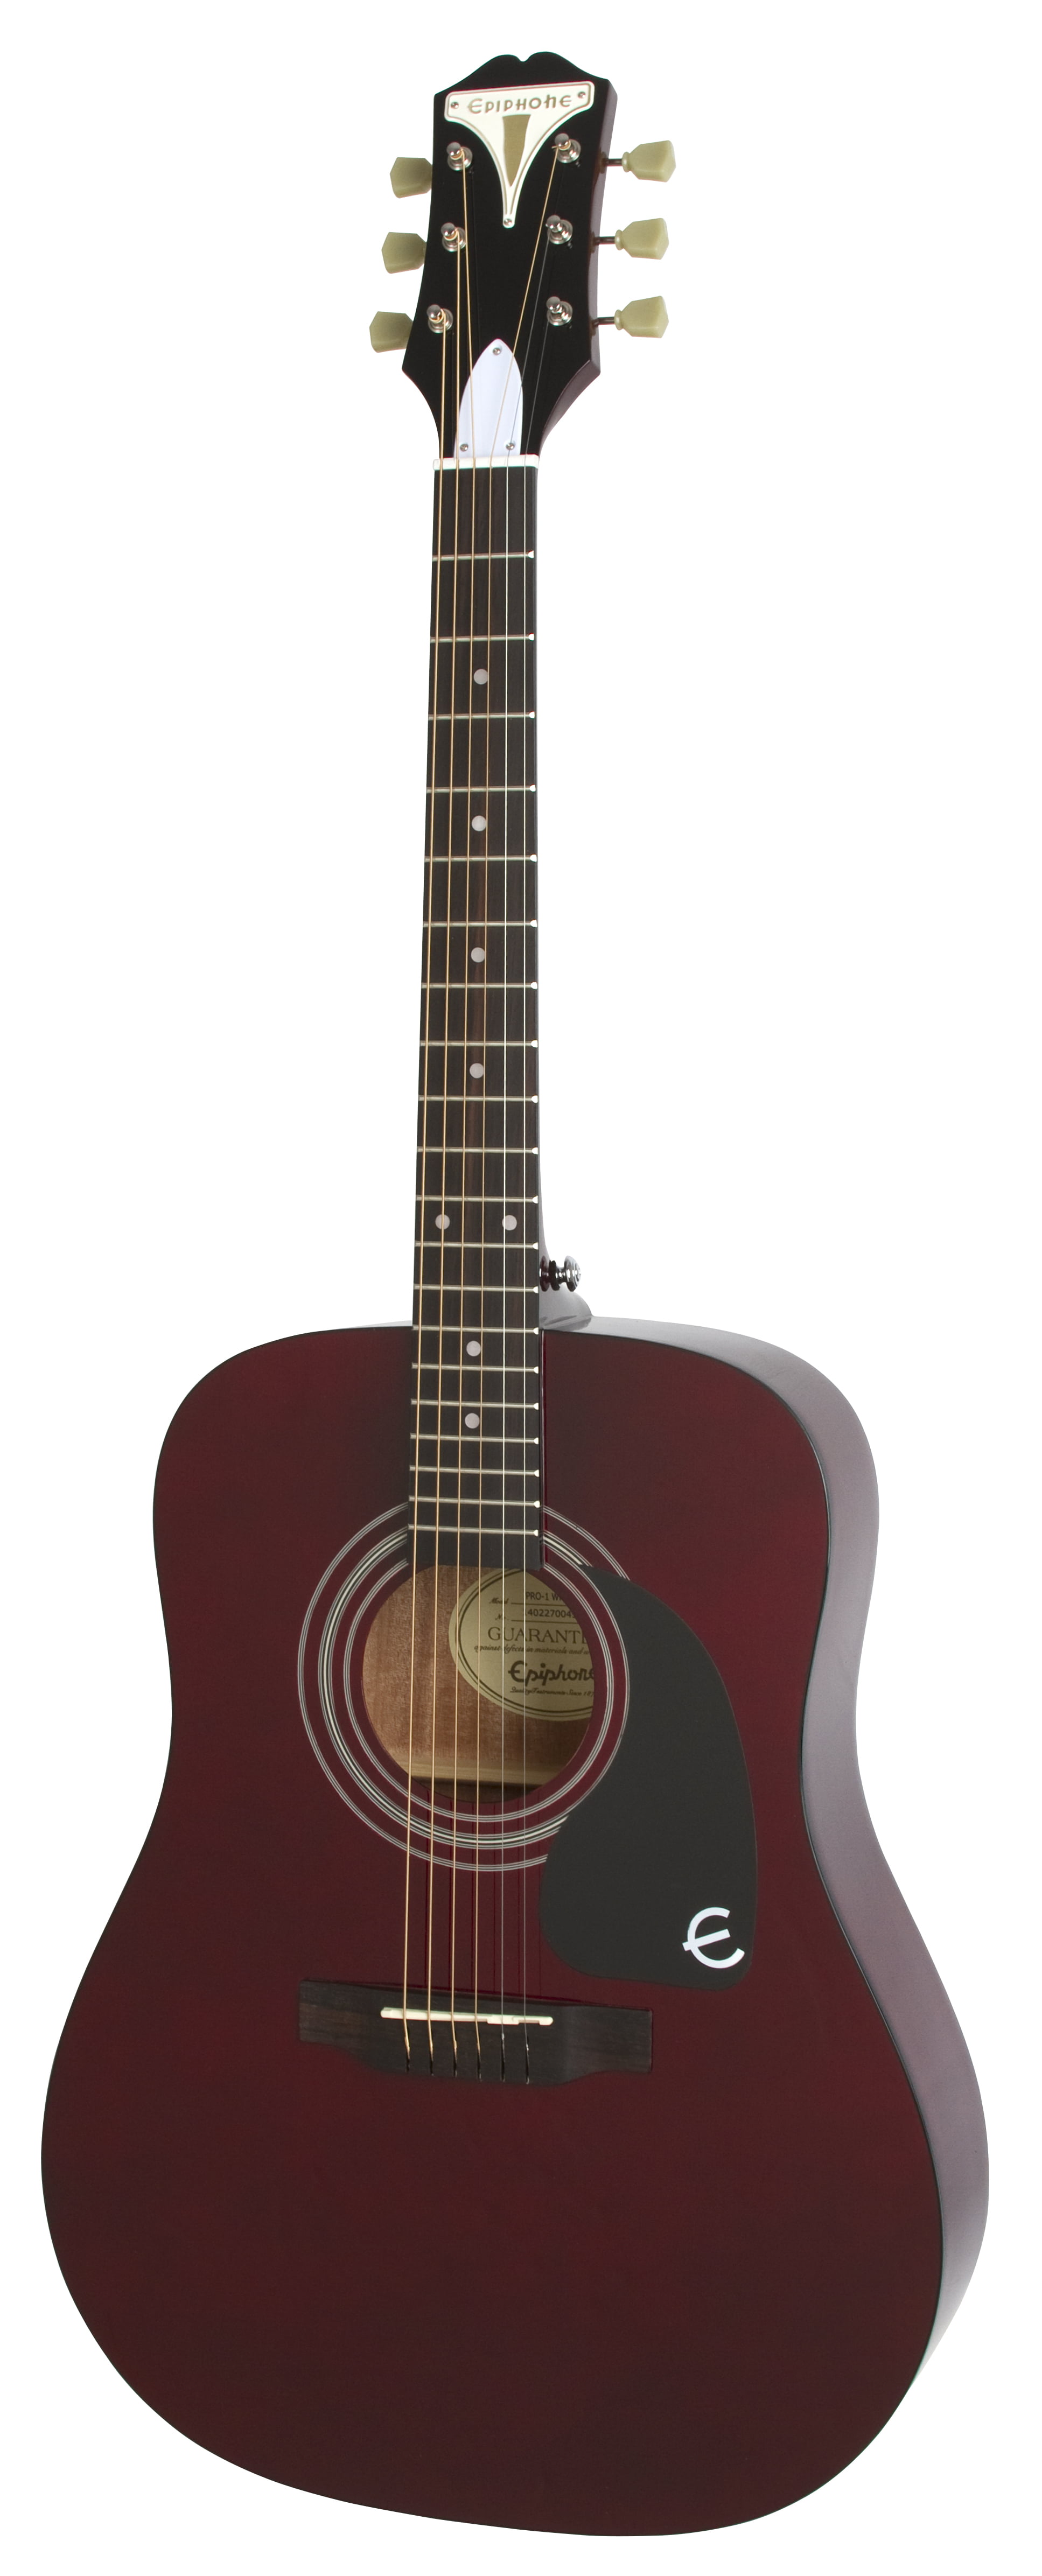  Epiphone PRO 1  Acoustic Guitar Walmart com Walmart com